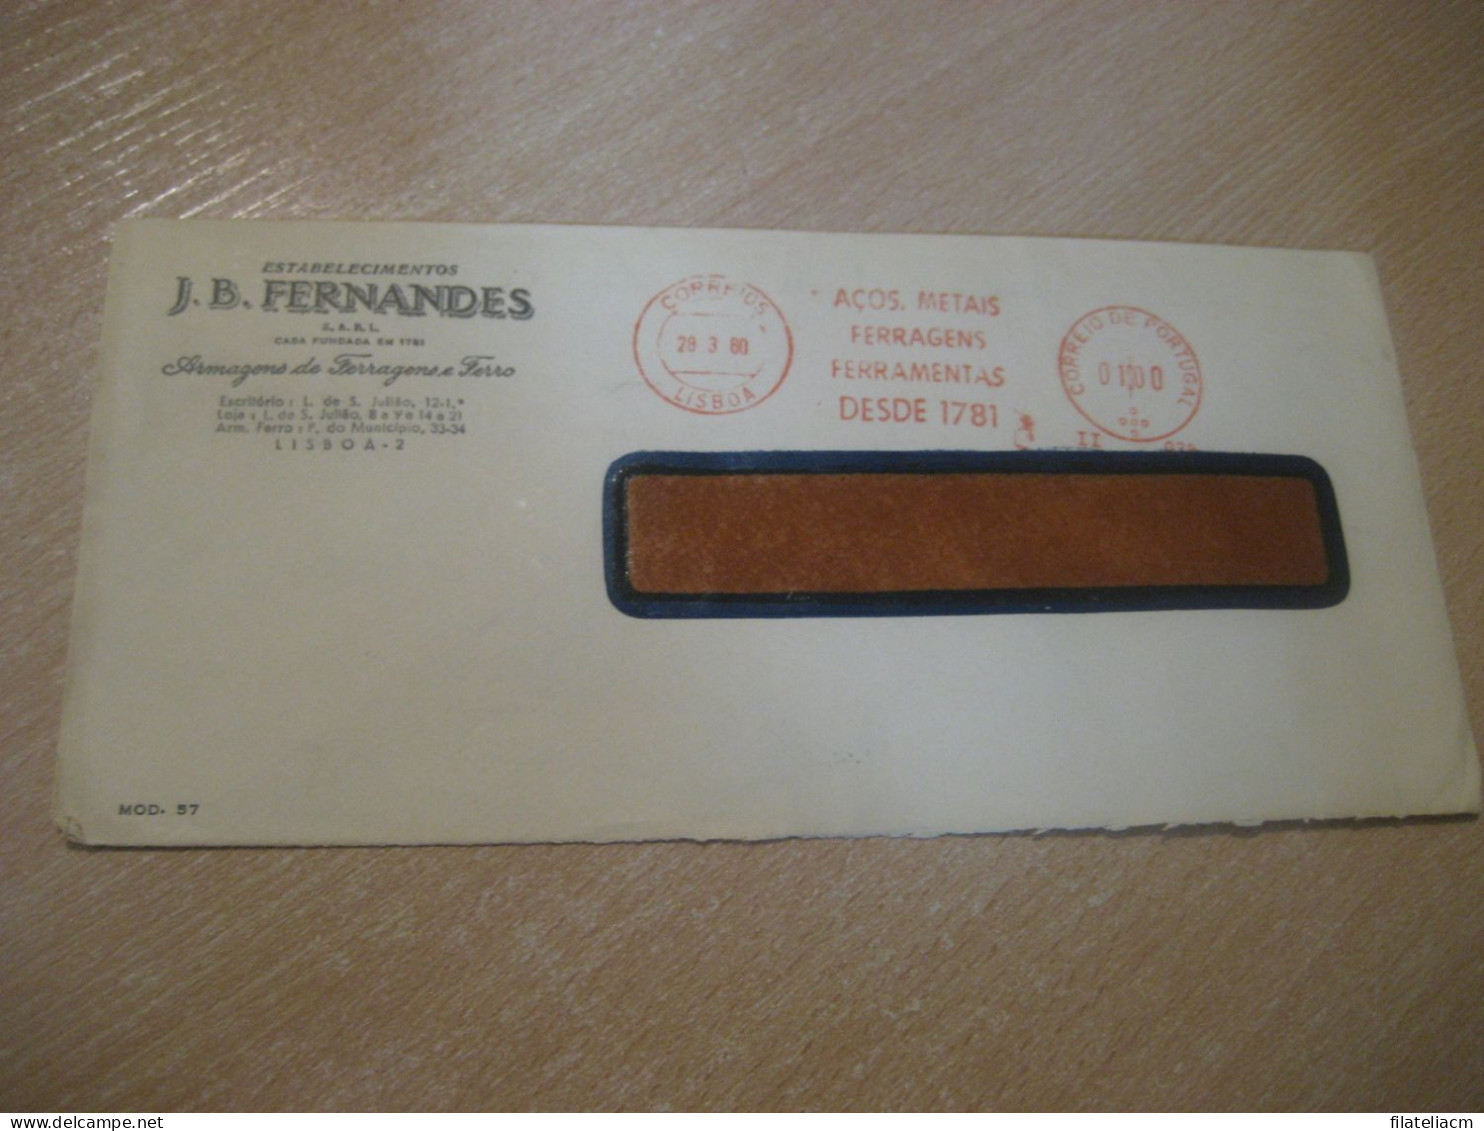 LISBOA 1960 Fernandes Metais Ferragens Ferramentas Meter Mail Cancel SURFORM Cover PORTUGAL - Briefe U. Dokumente